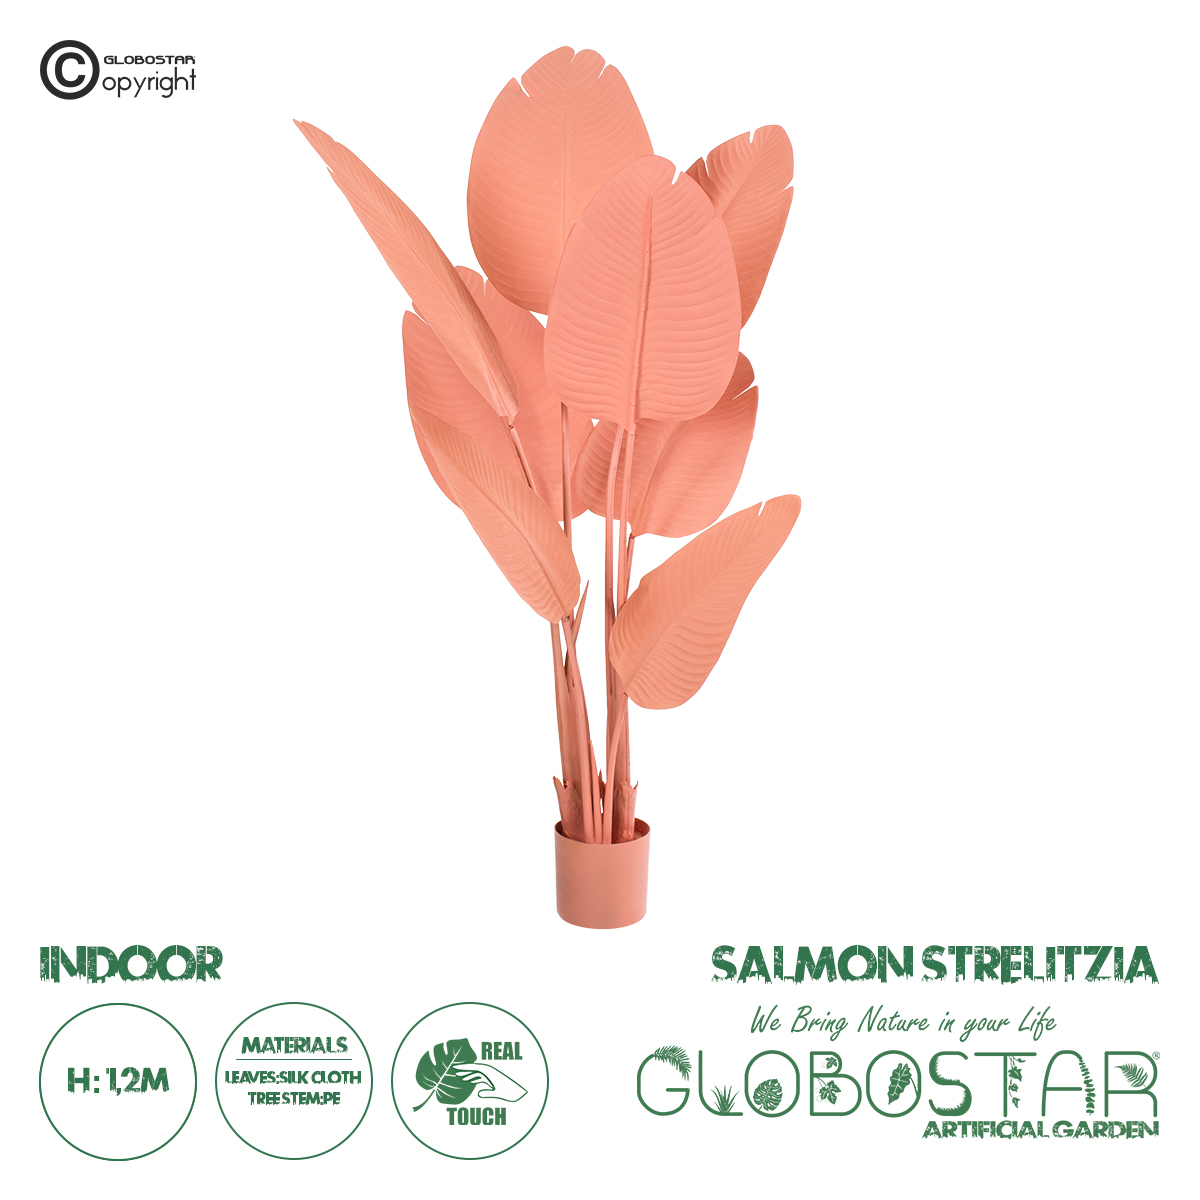 GloboStar® Artificial Garden SALMON STRELITZIA 20366 Τεχνητό Διακοσμητικό Φυτό Σομόν Στερλίτσια Υ120cm